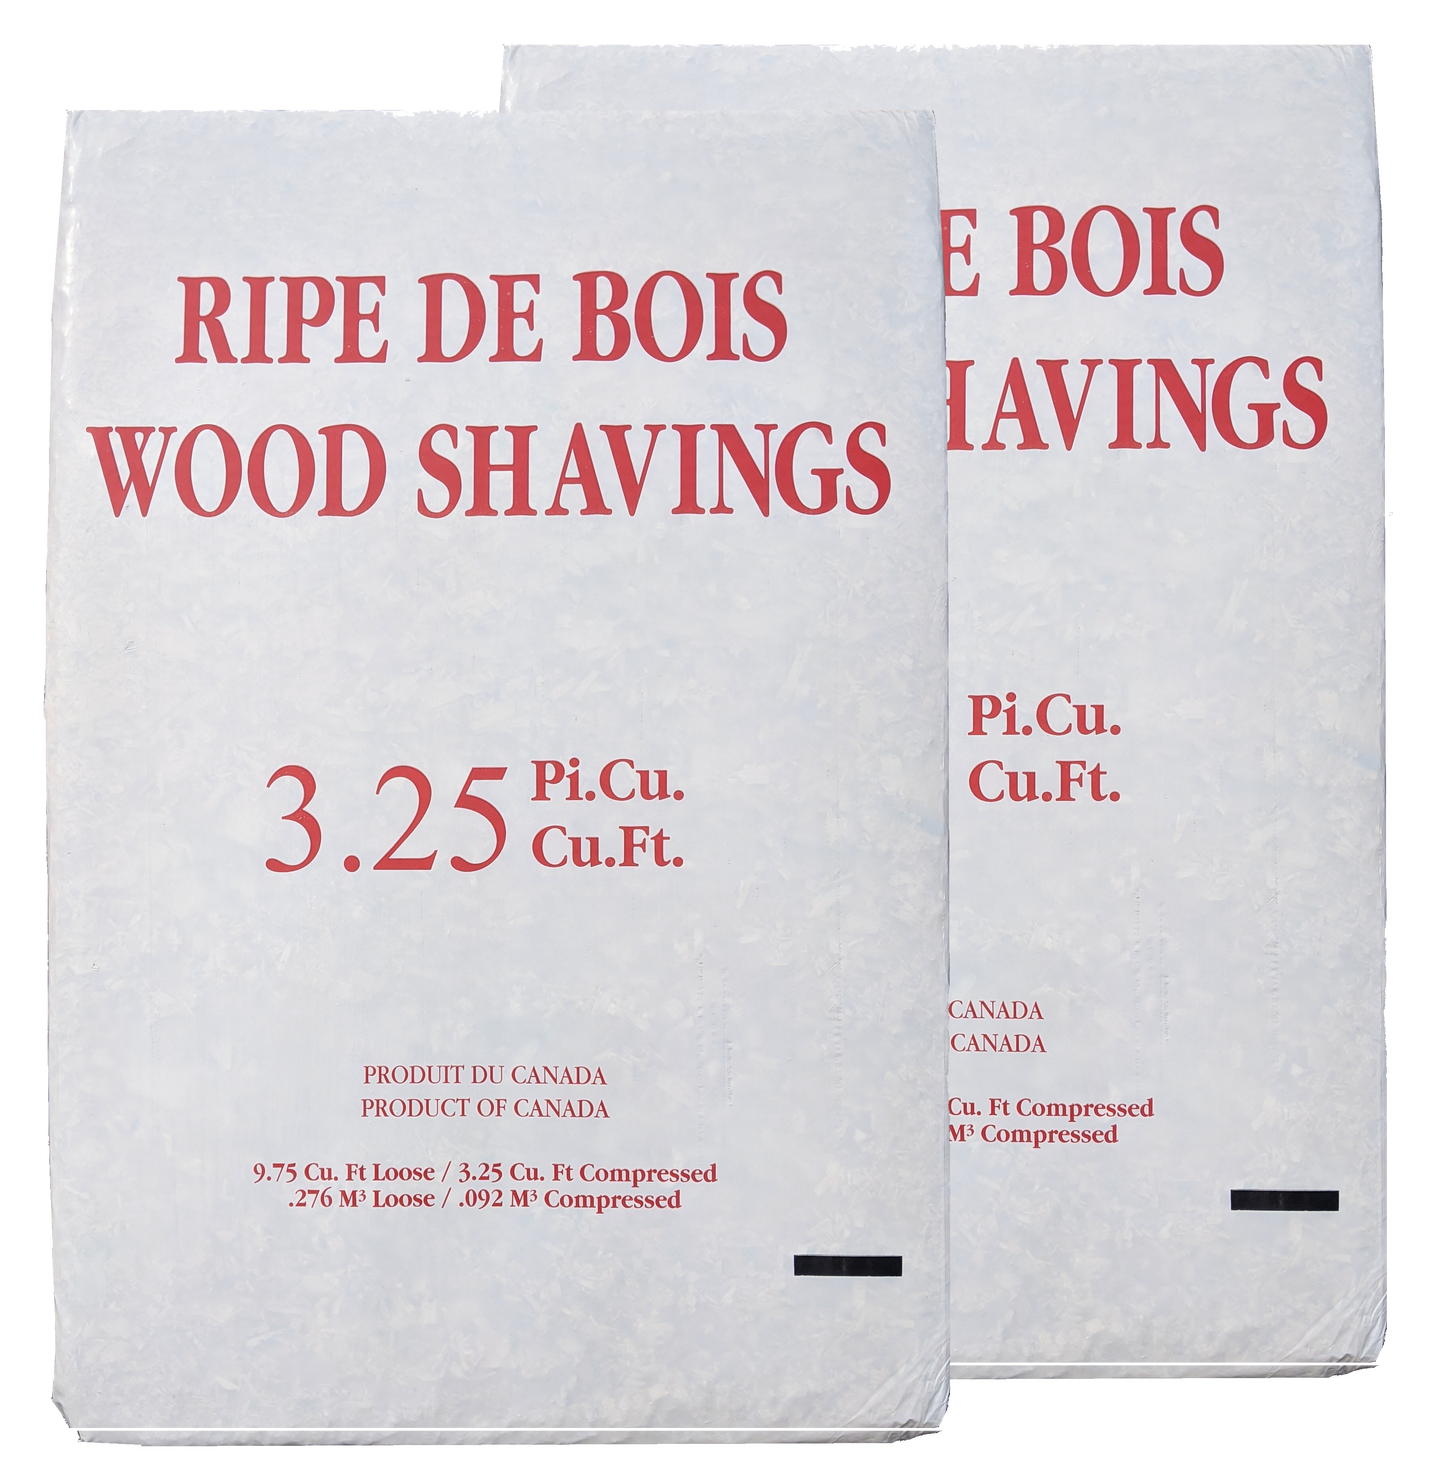 Wood Shavings